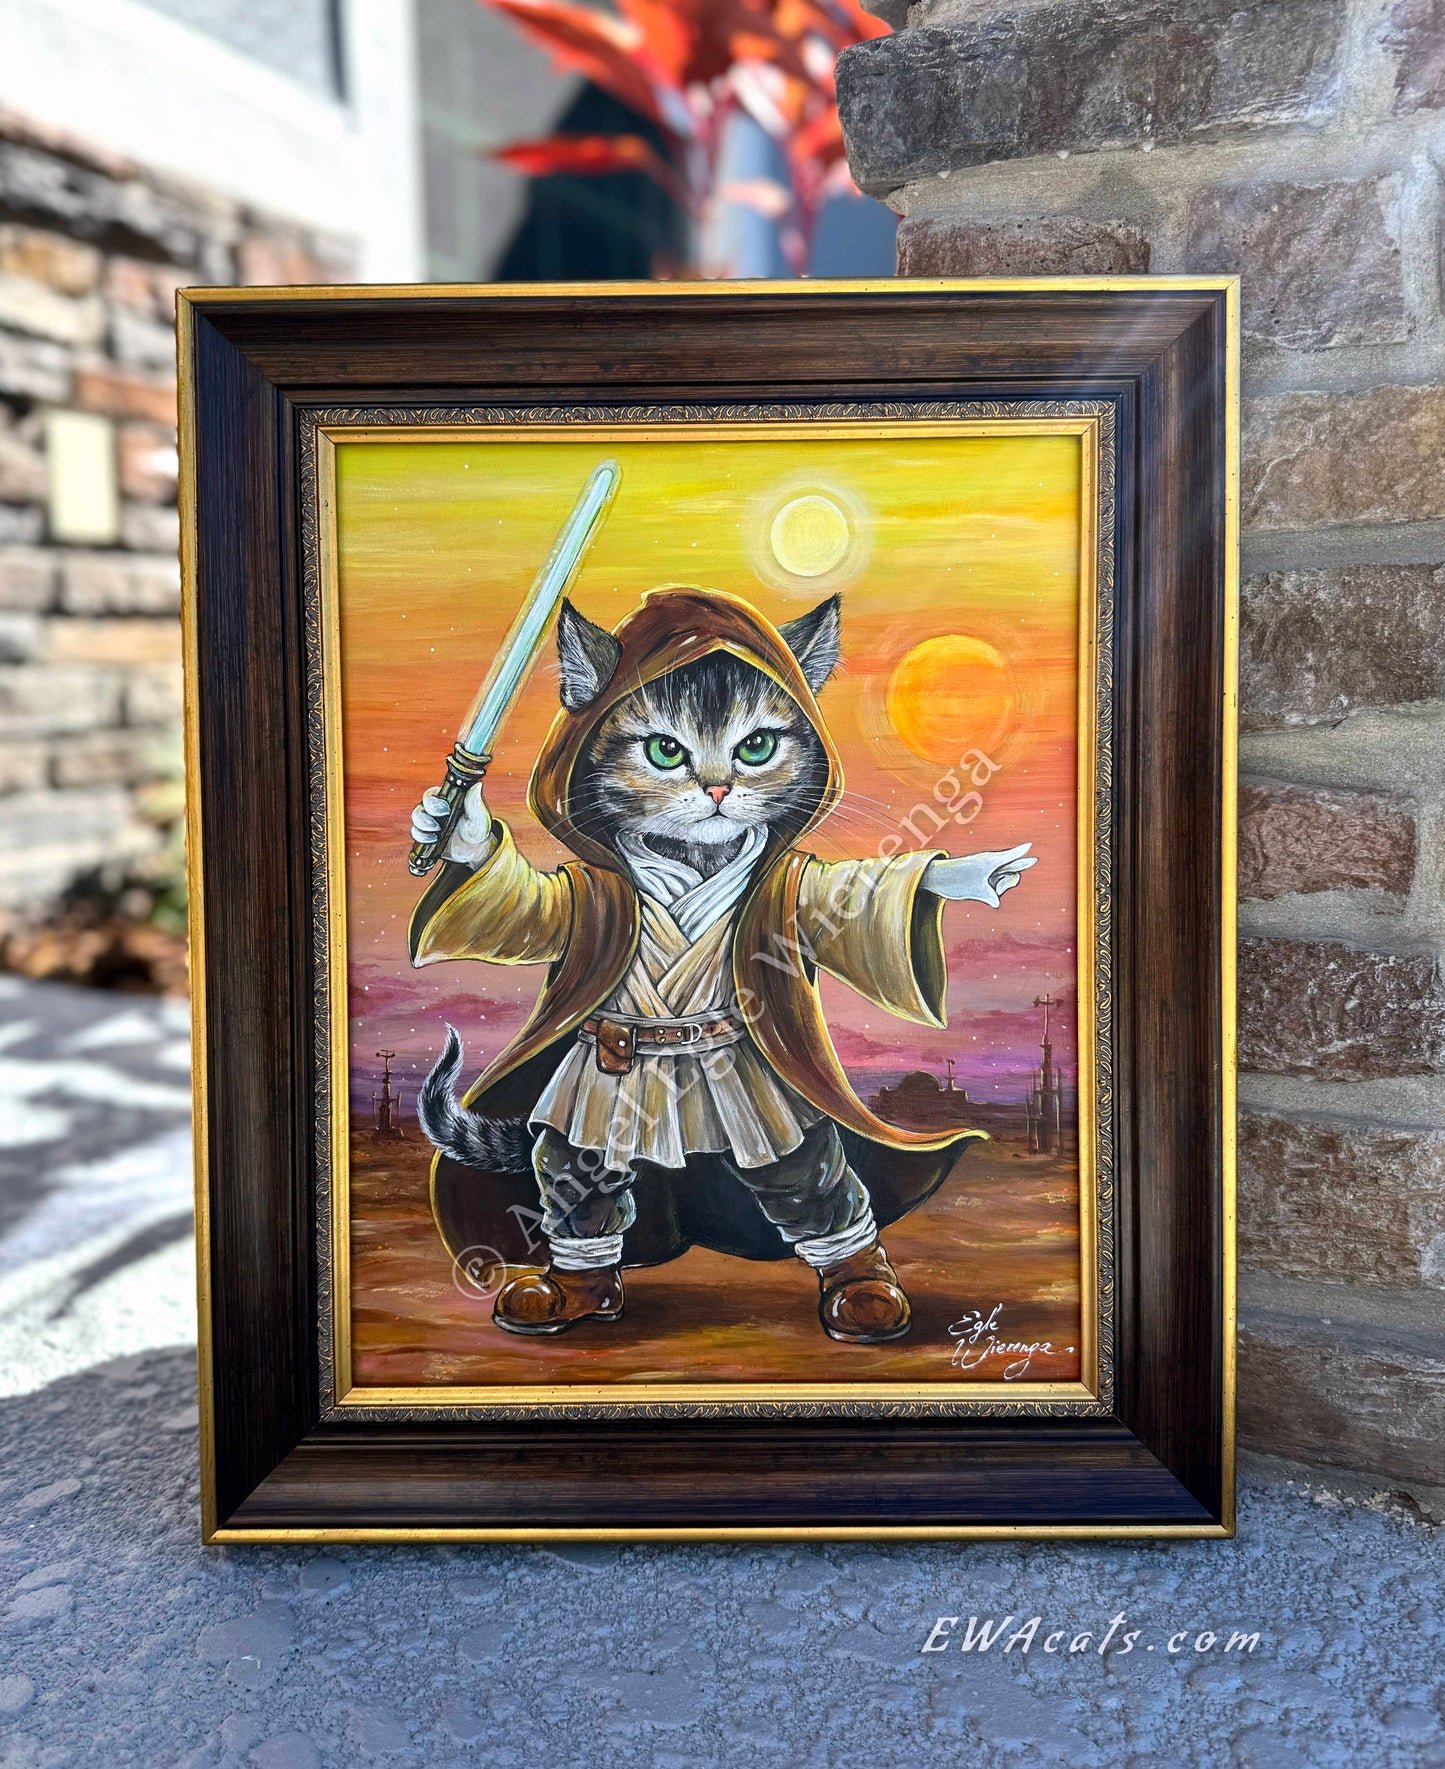 Original Painting "Obi - Wan Catnobi"